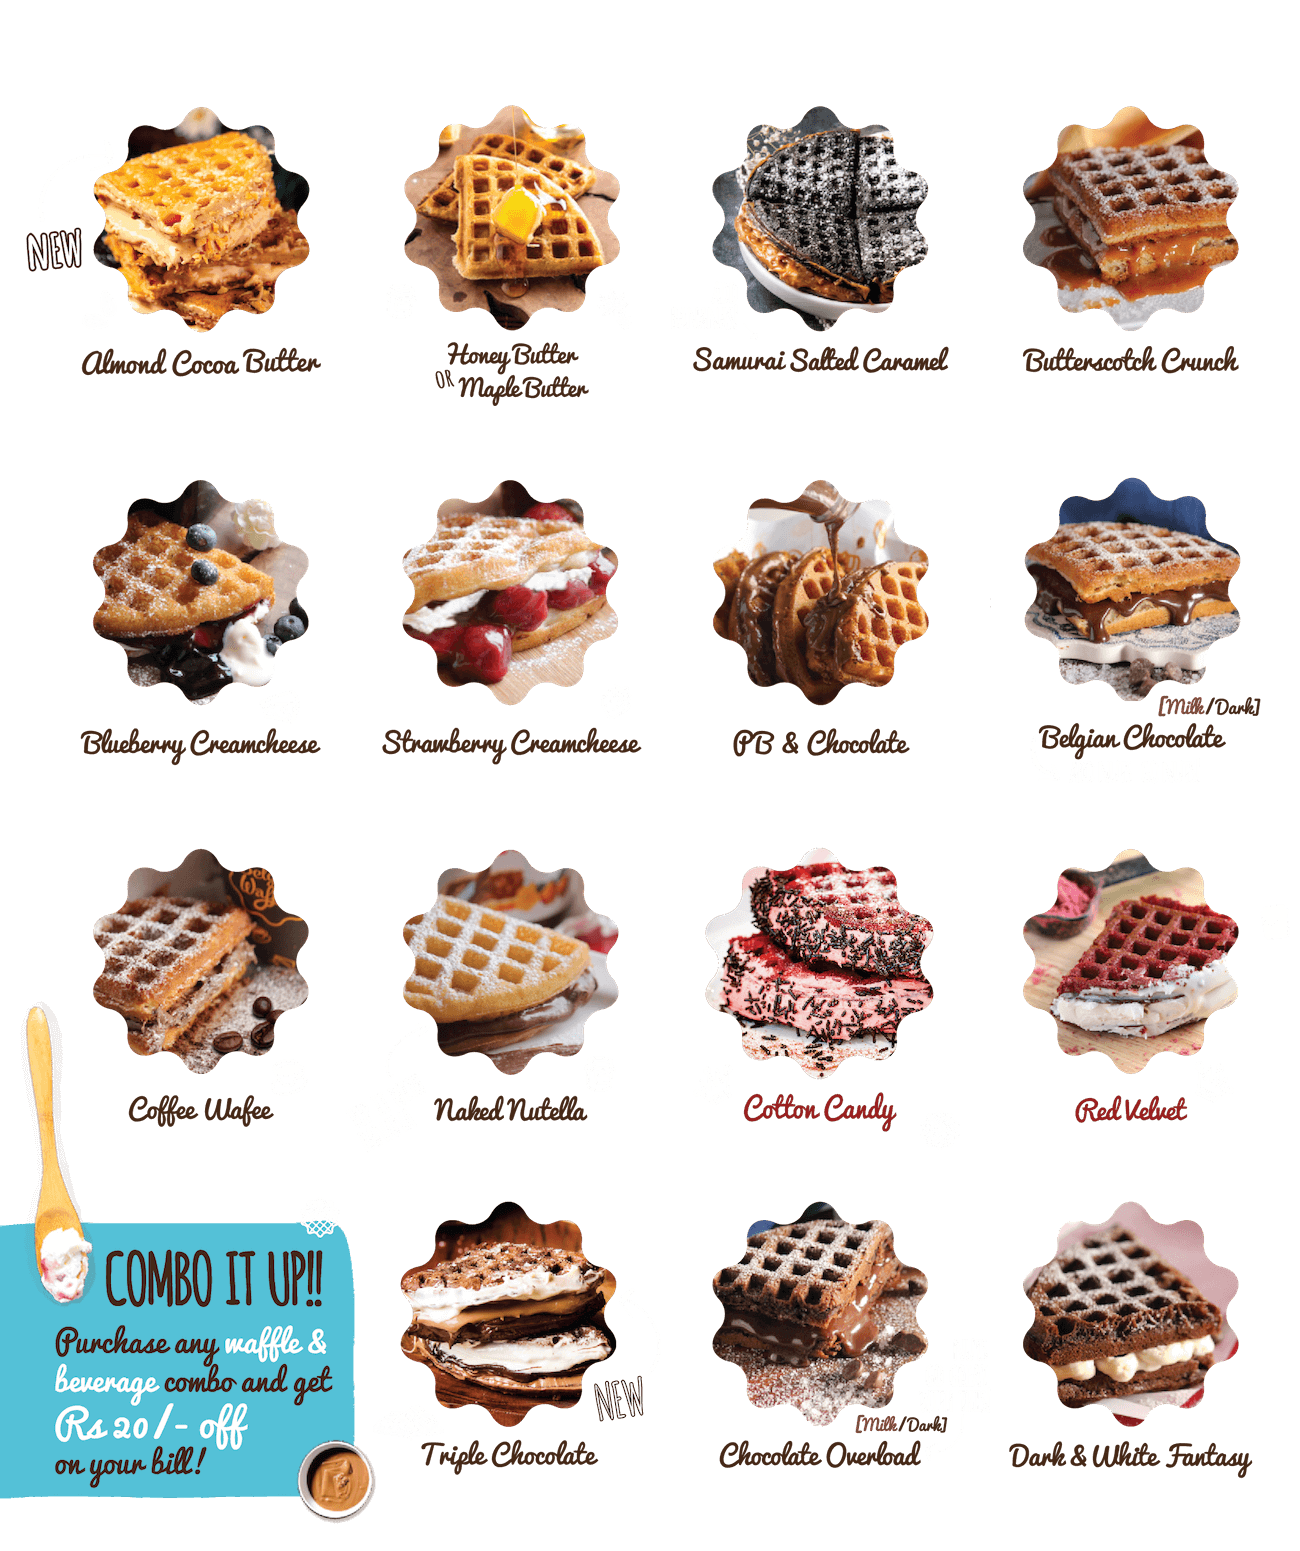 waffle house menu 2018